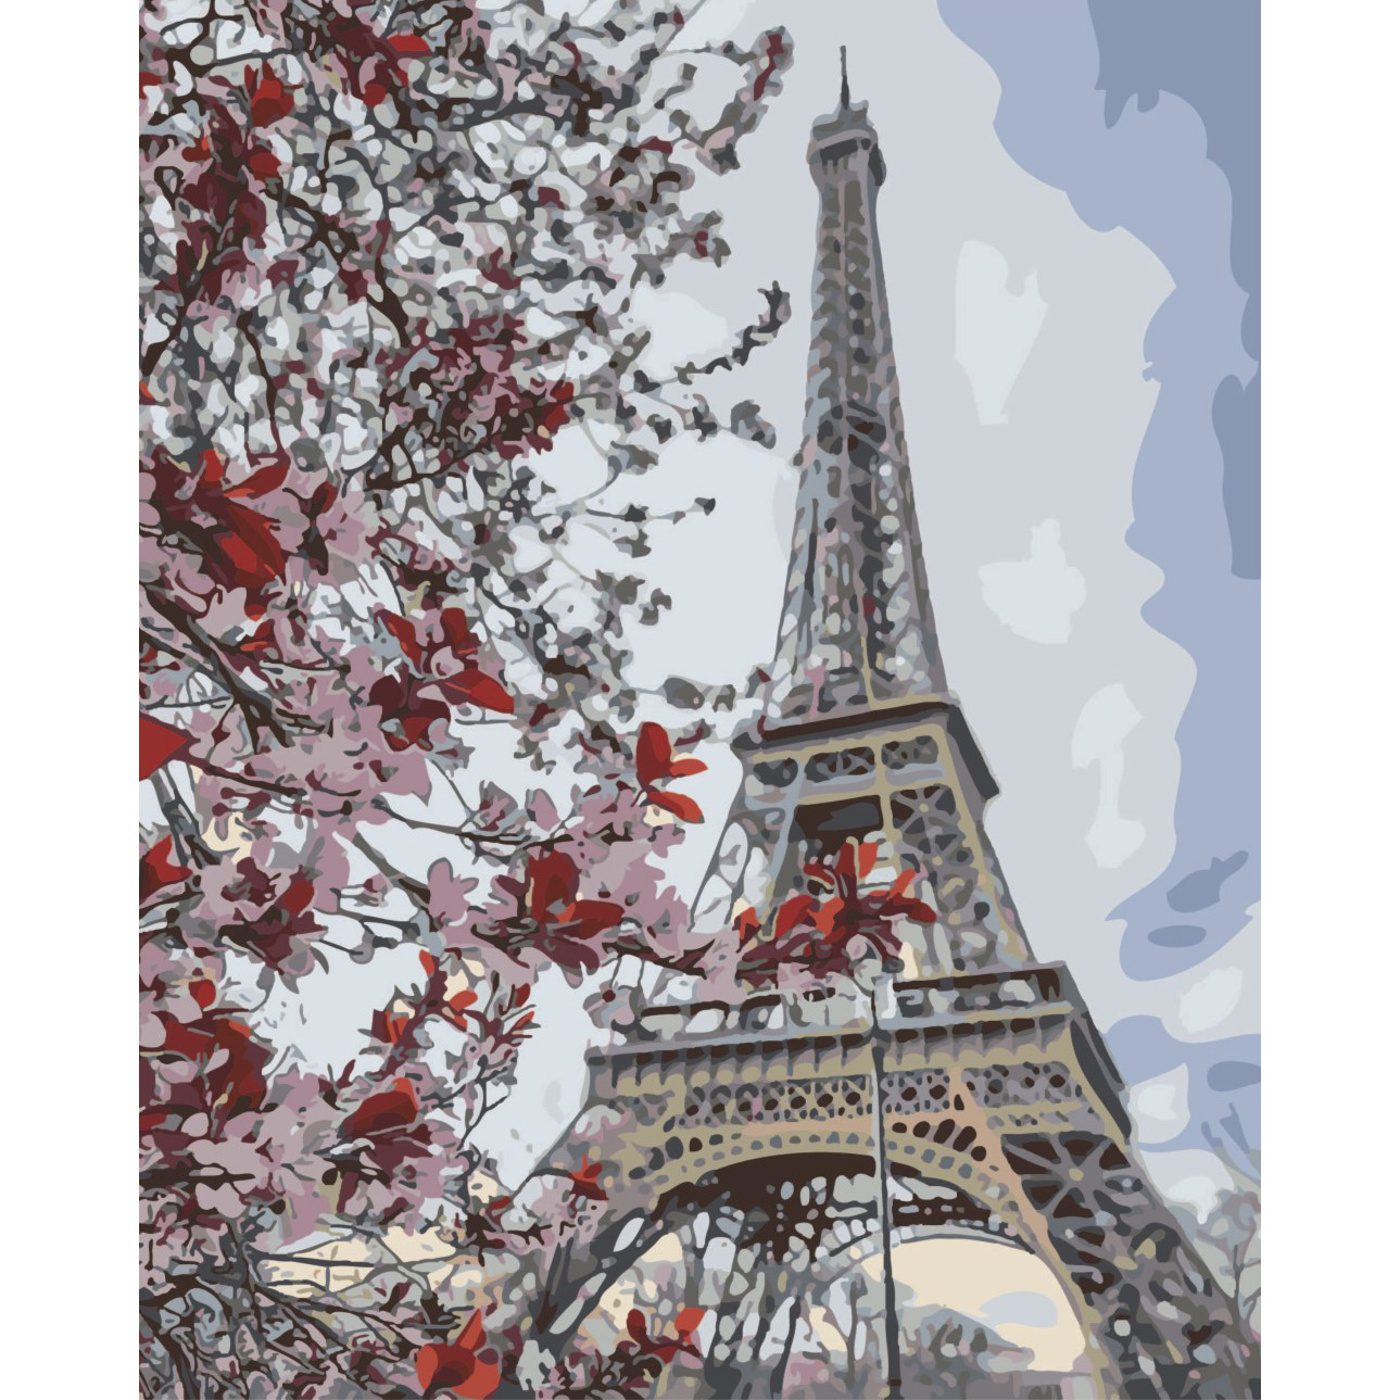 Malen nach Zahlen Strateg Blumen eines Baumes in der Nähe eines Turms auf farbigem Hintergrund, Größe 40x50 cm (SY6532)